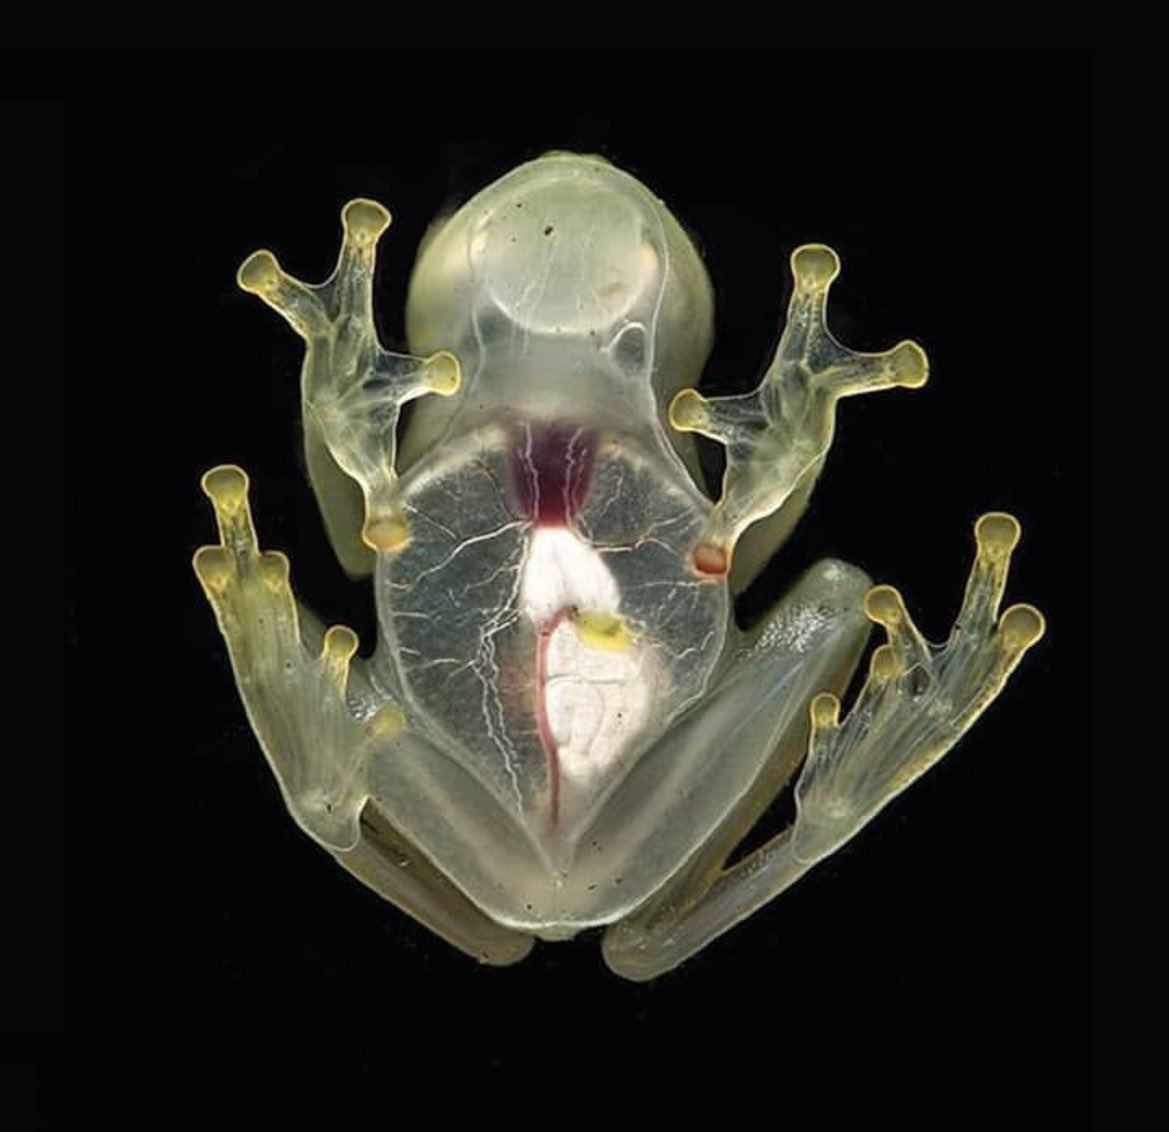 INSOLITE Une grenouille de verre   complètement transparente !🐸
Hyalinobatrachium yaku est une espèce de grenouilles de verre, découverte dans les plaines amazoniennes de l'Équateur  à la caractéristique incroyable : sa peau translucide... qui l'est tellement qu'on peut voir ses…